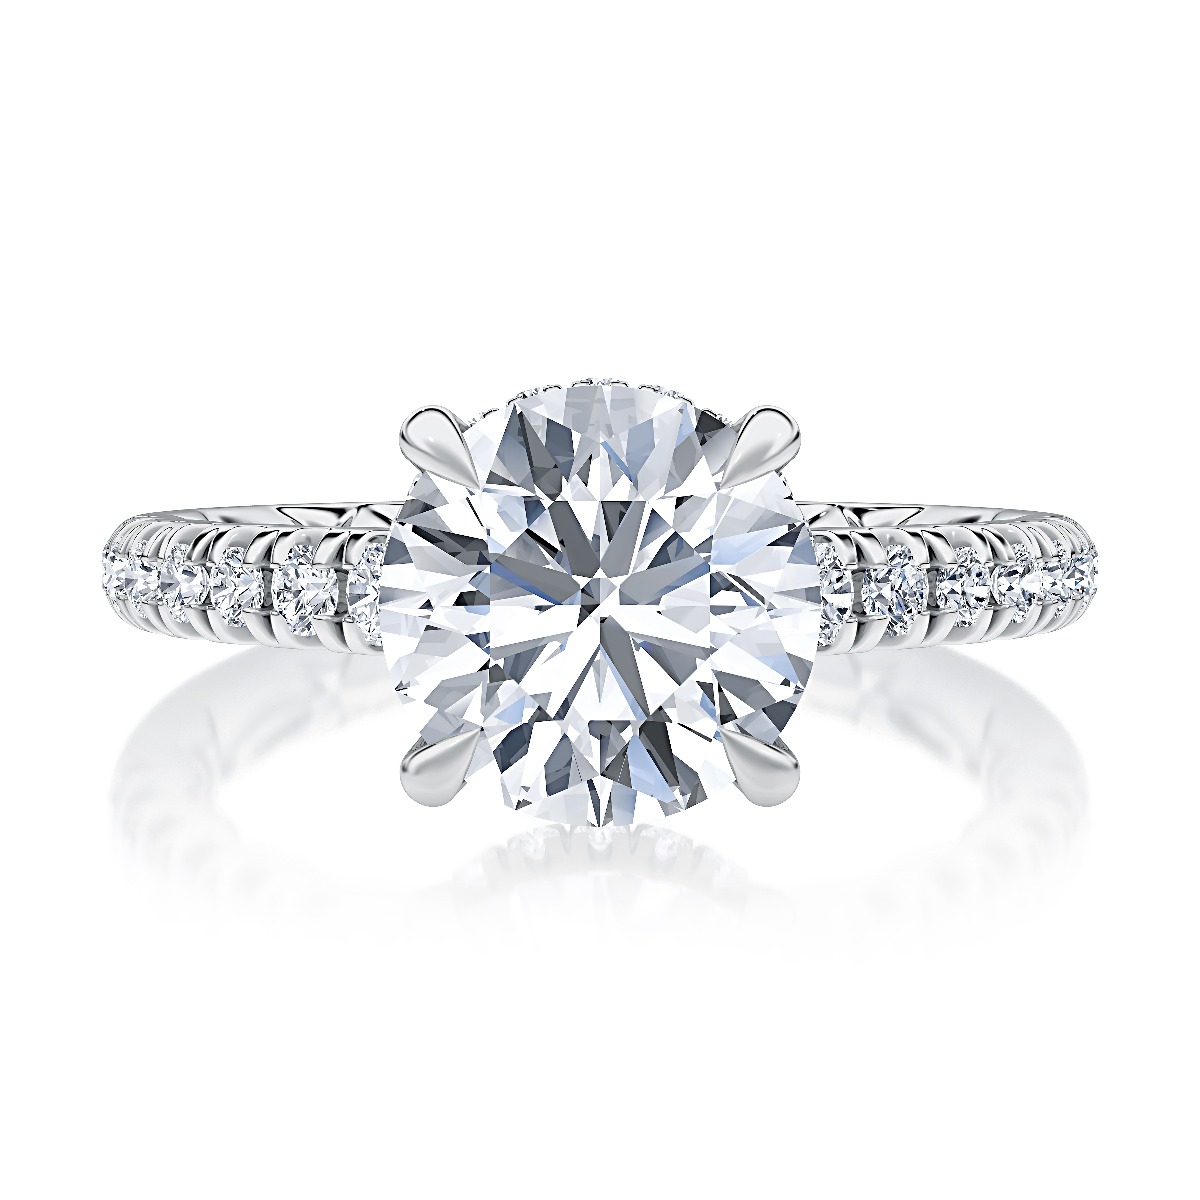 Luxury Engagement Rings | Designer Engagement Rings For Women, Nickel ...